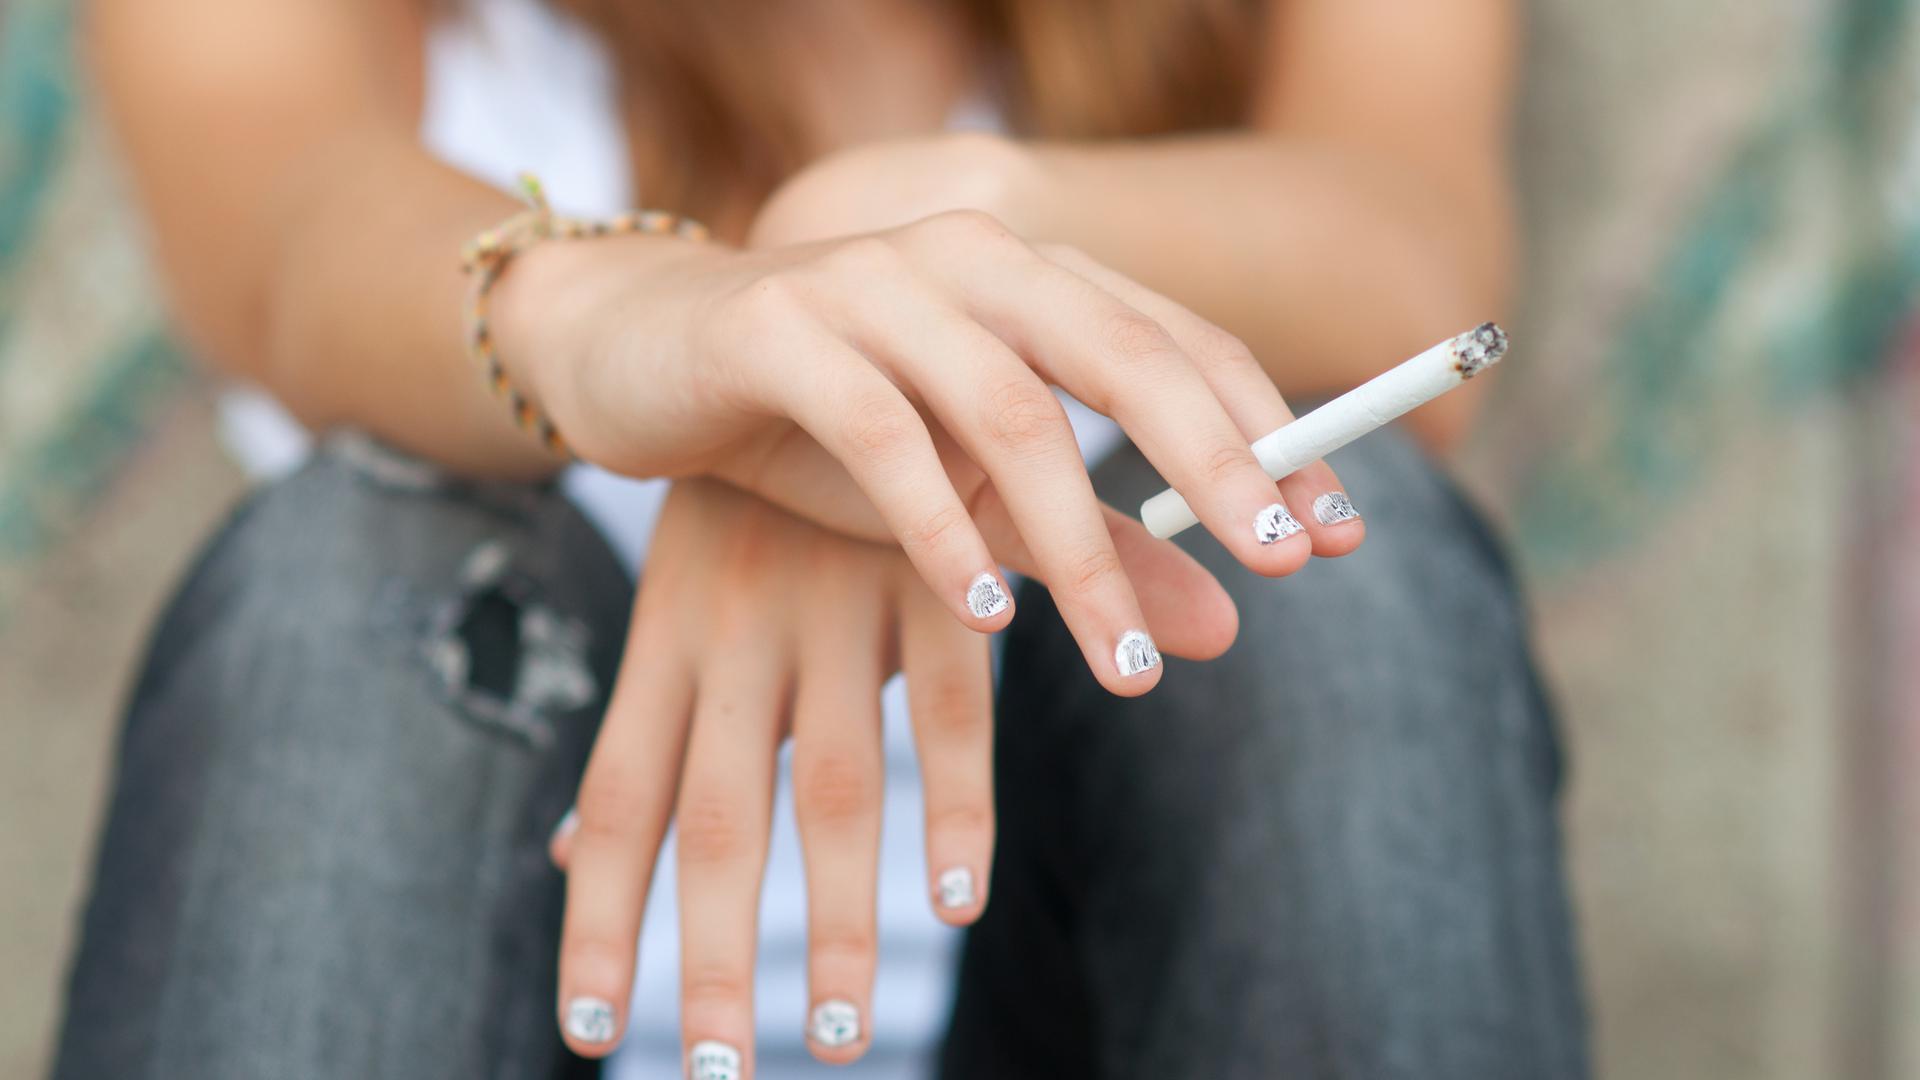 C'est l'augmentation spectaculaire des jeunes fumeurs âgés de 16 à 24 ans qui inquiète le plus la Fondation cancer